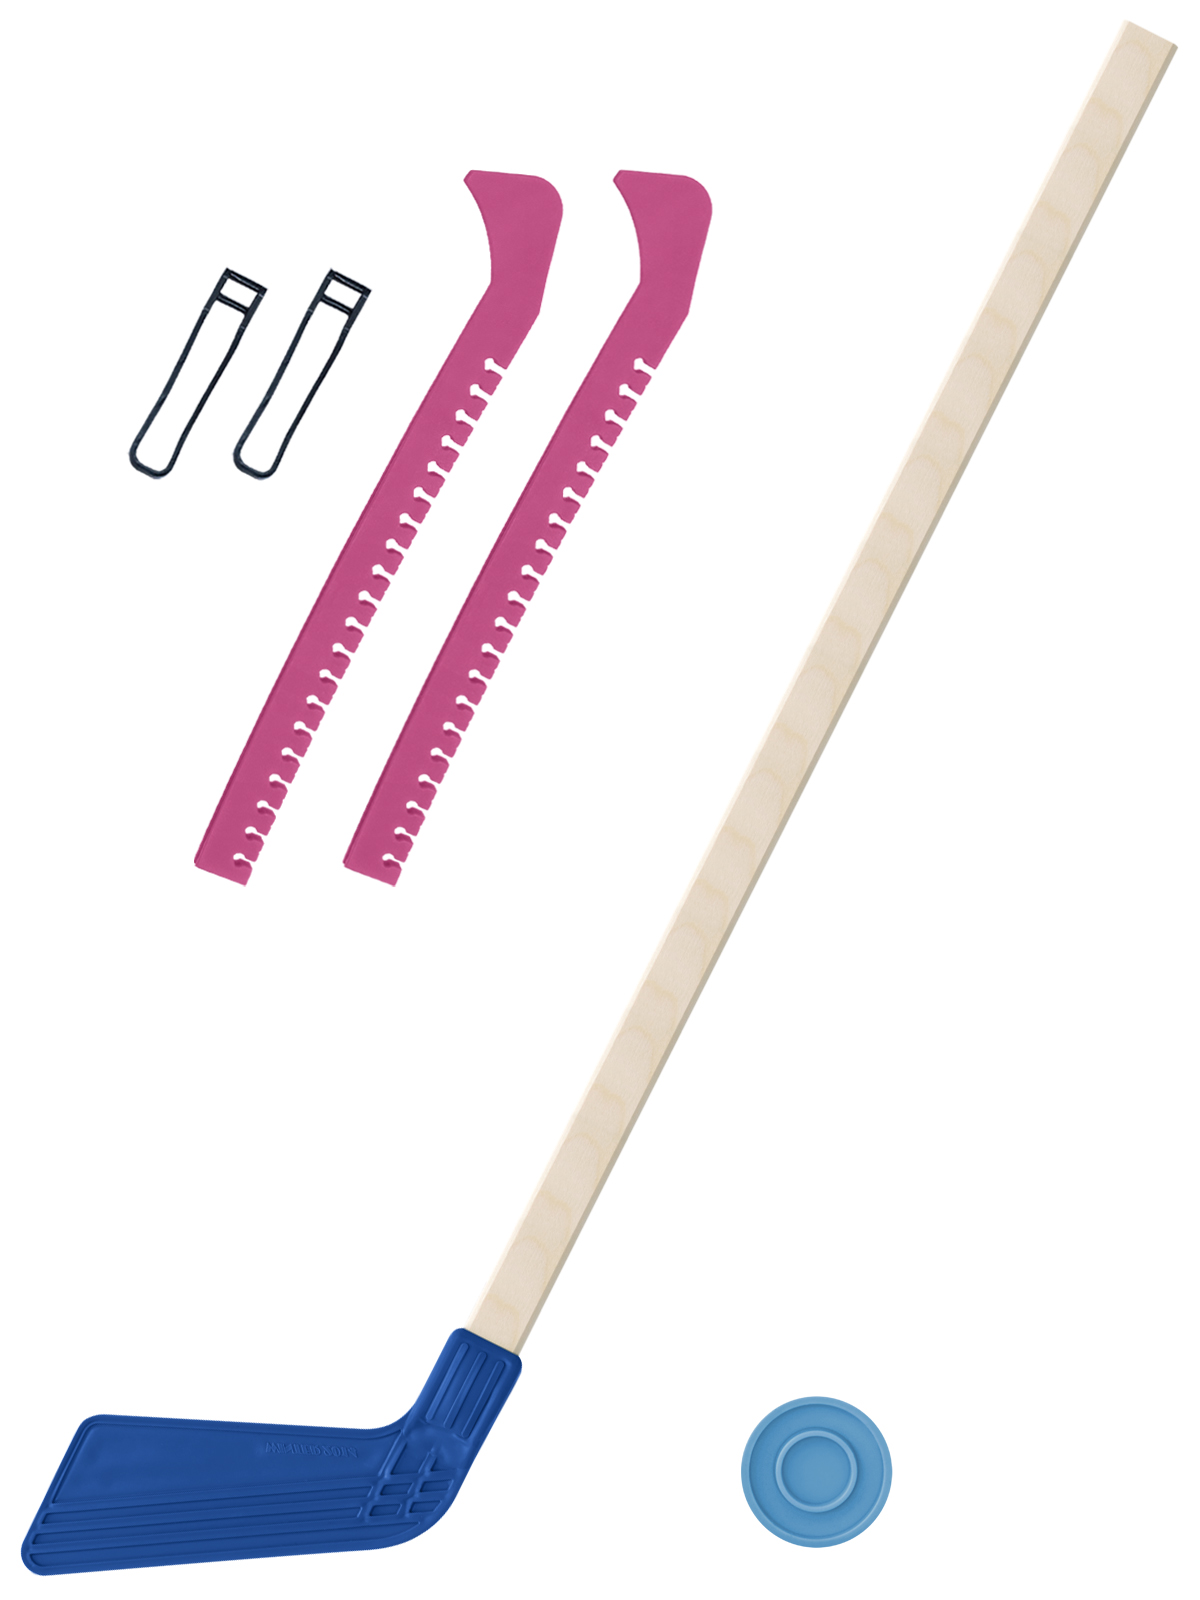 фото Набор зимний клюшка хоккейная синяя 80 см.+шайба+чехлы для коньков розовые задира-плюс